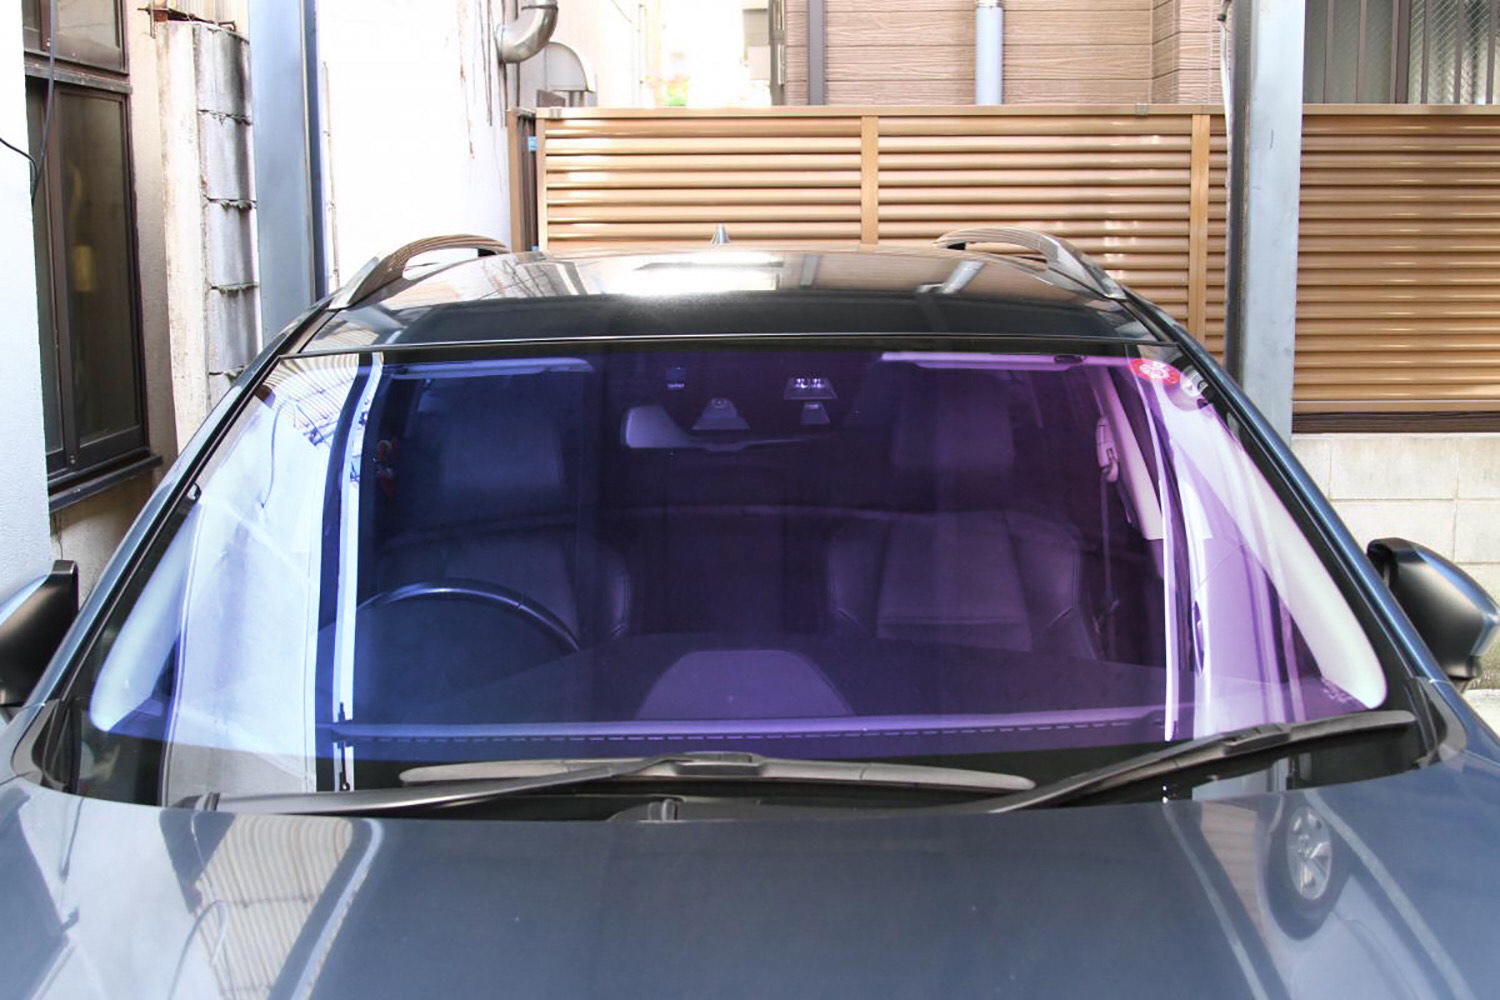 クルマのフロントガラスに色がついたフィルムを貼るのは合法 いま流行る オーロラフィルム 自動車情報 ニュース Web Cartop